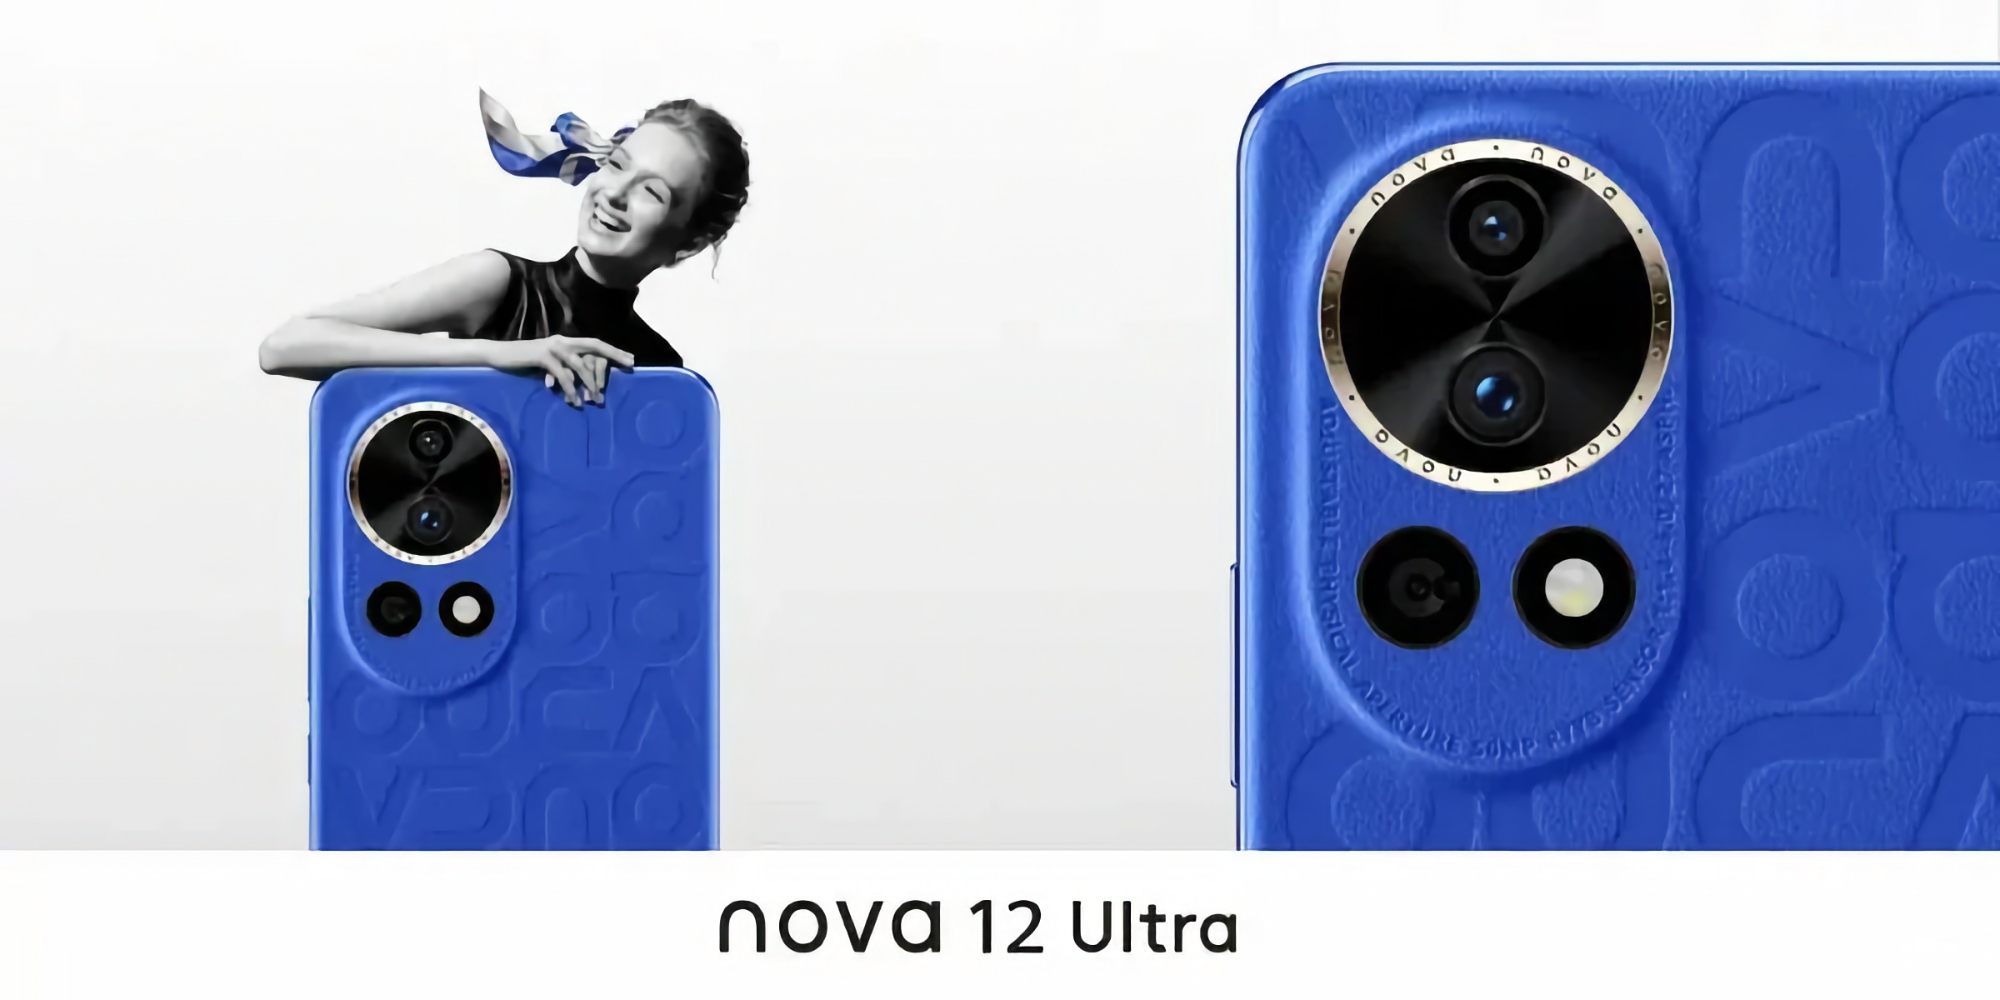 Ein Insider zeigte das Aussehen von Huawei Nova 12 Ultra und teilte einige Merkmale der Neuheit